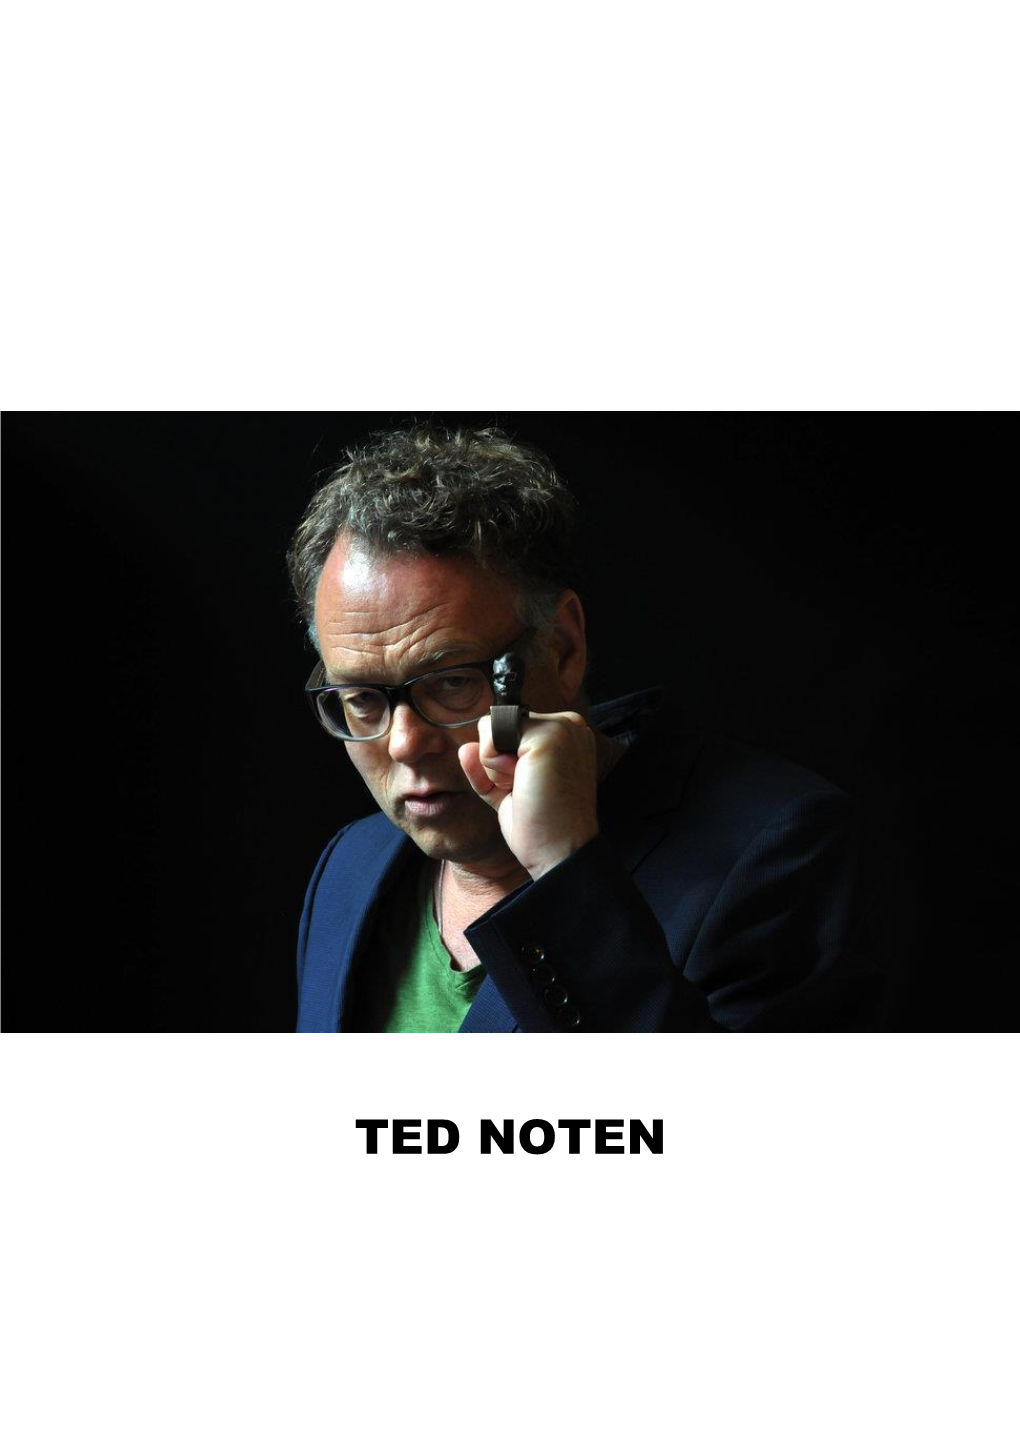 CV Ted Noten